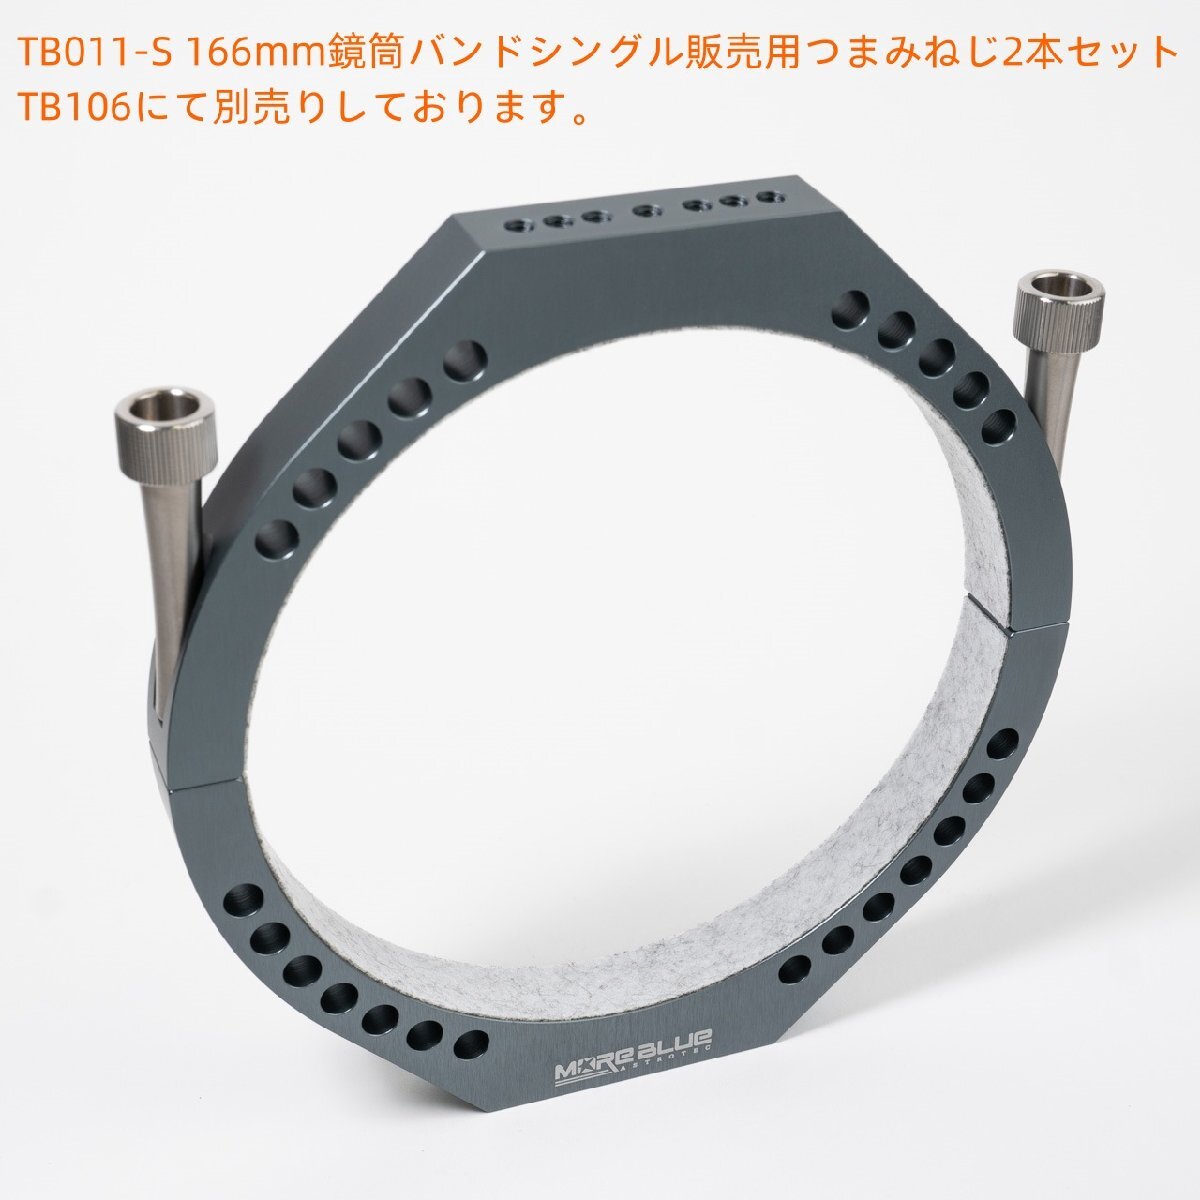 TB011-S 新型超軽量化設計 内径166mm鏡筒バンドシングル販売 ゆうパック全国送料700円_画像4